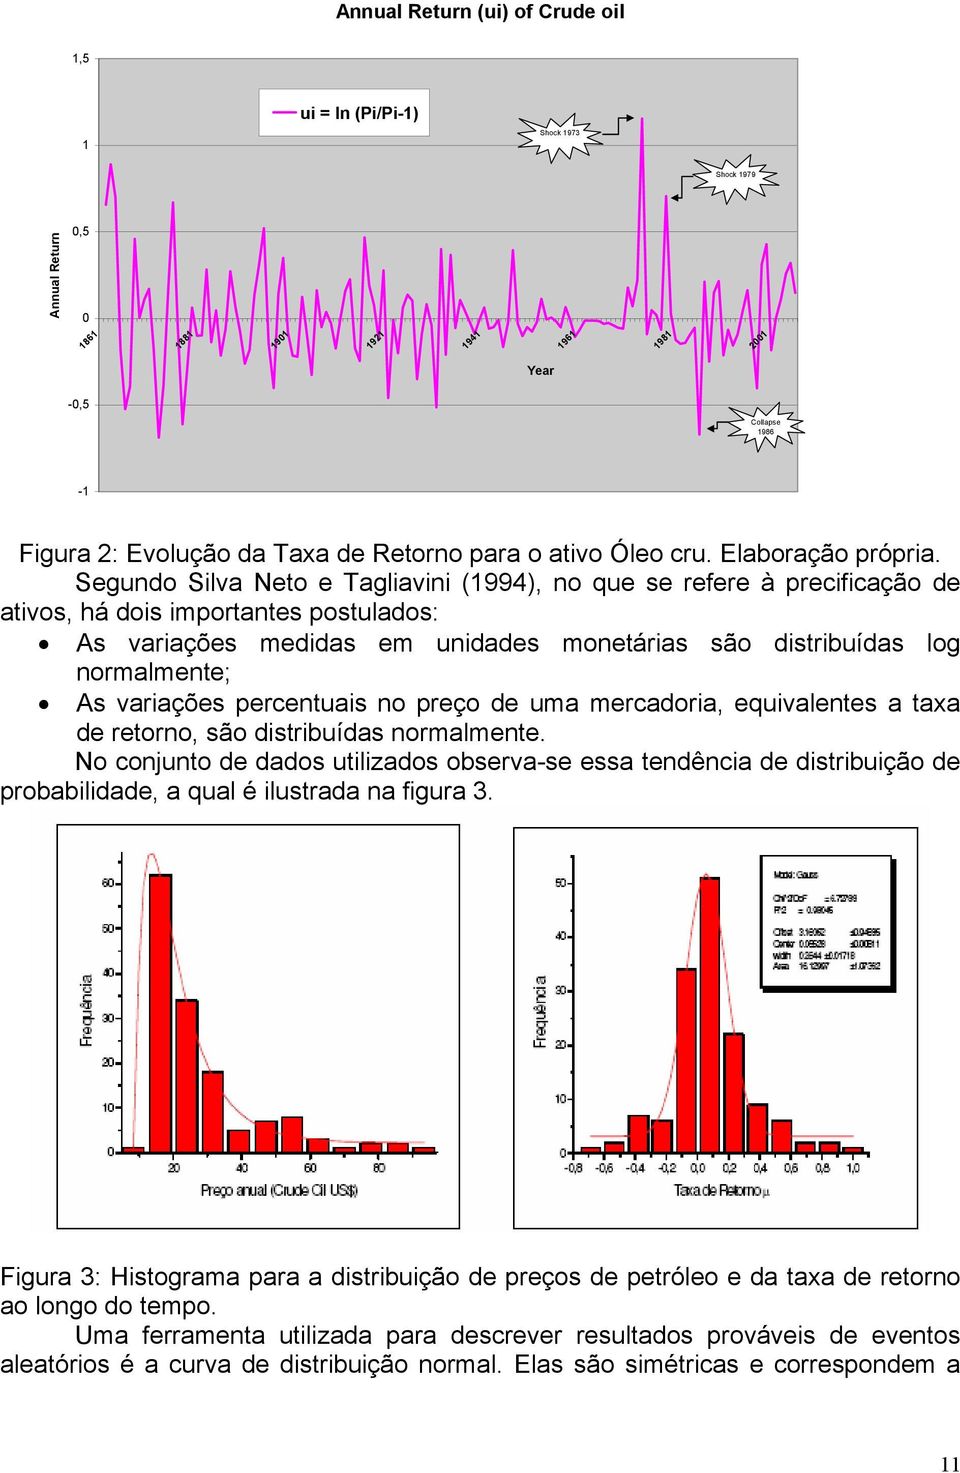 Segundo Silva Neto e Tagliavini (1994), no que se refere à precificação de ativos, há dois importantes postulados: As variações medidas em unidades monetárias são distribuídas log normalmente; As